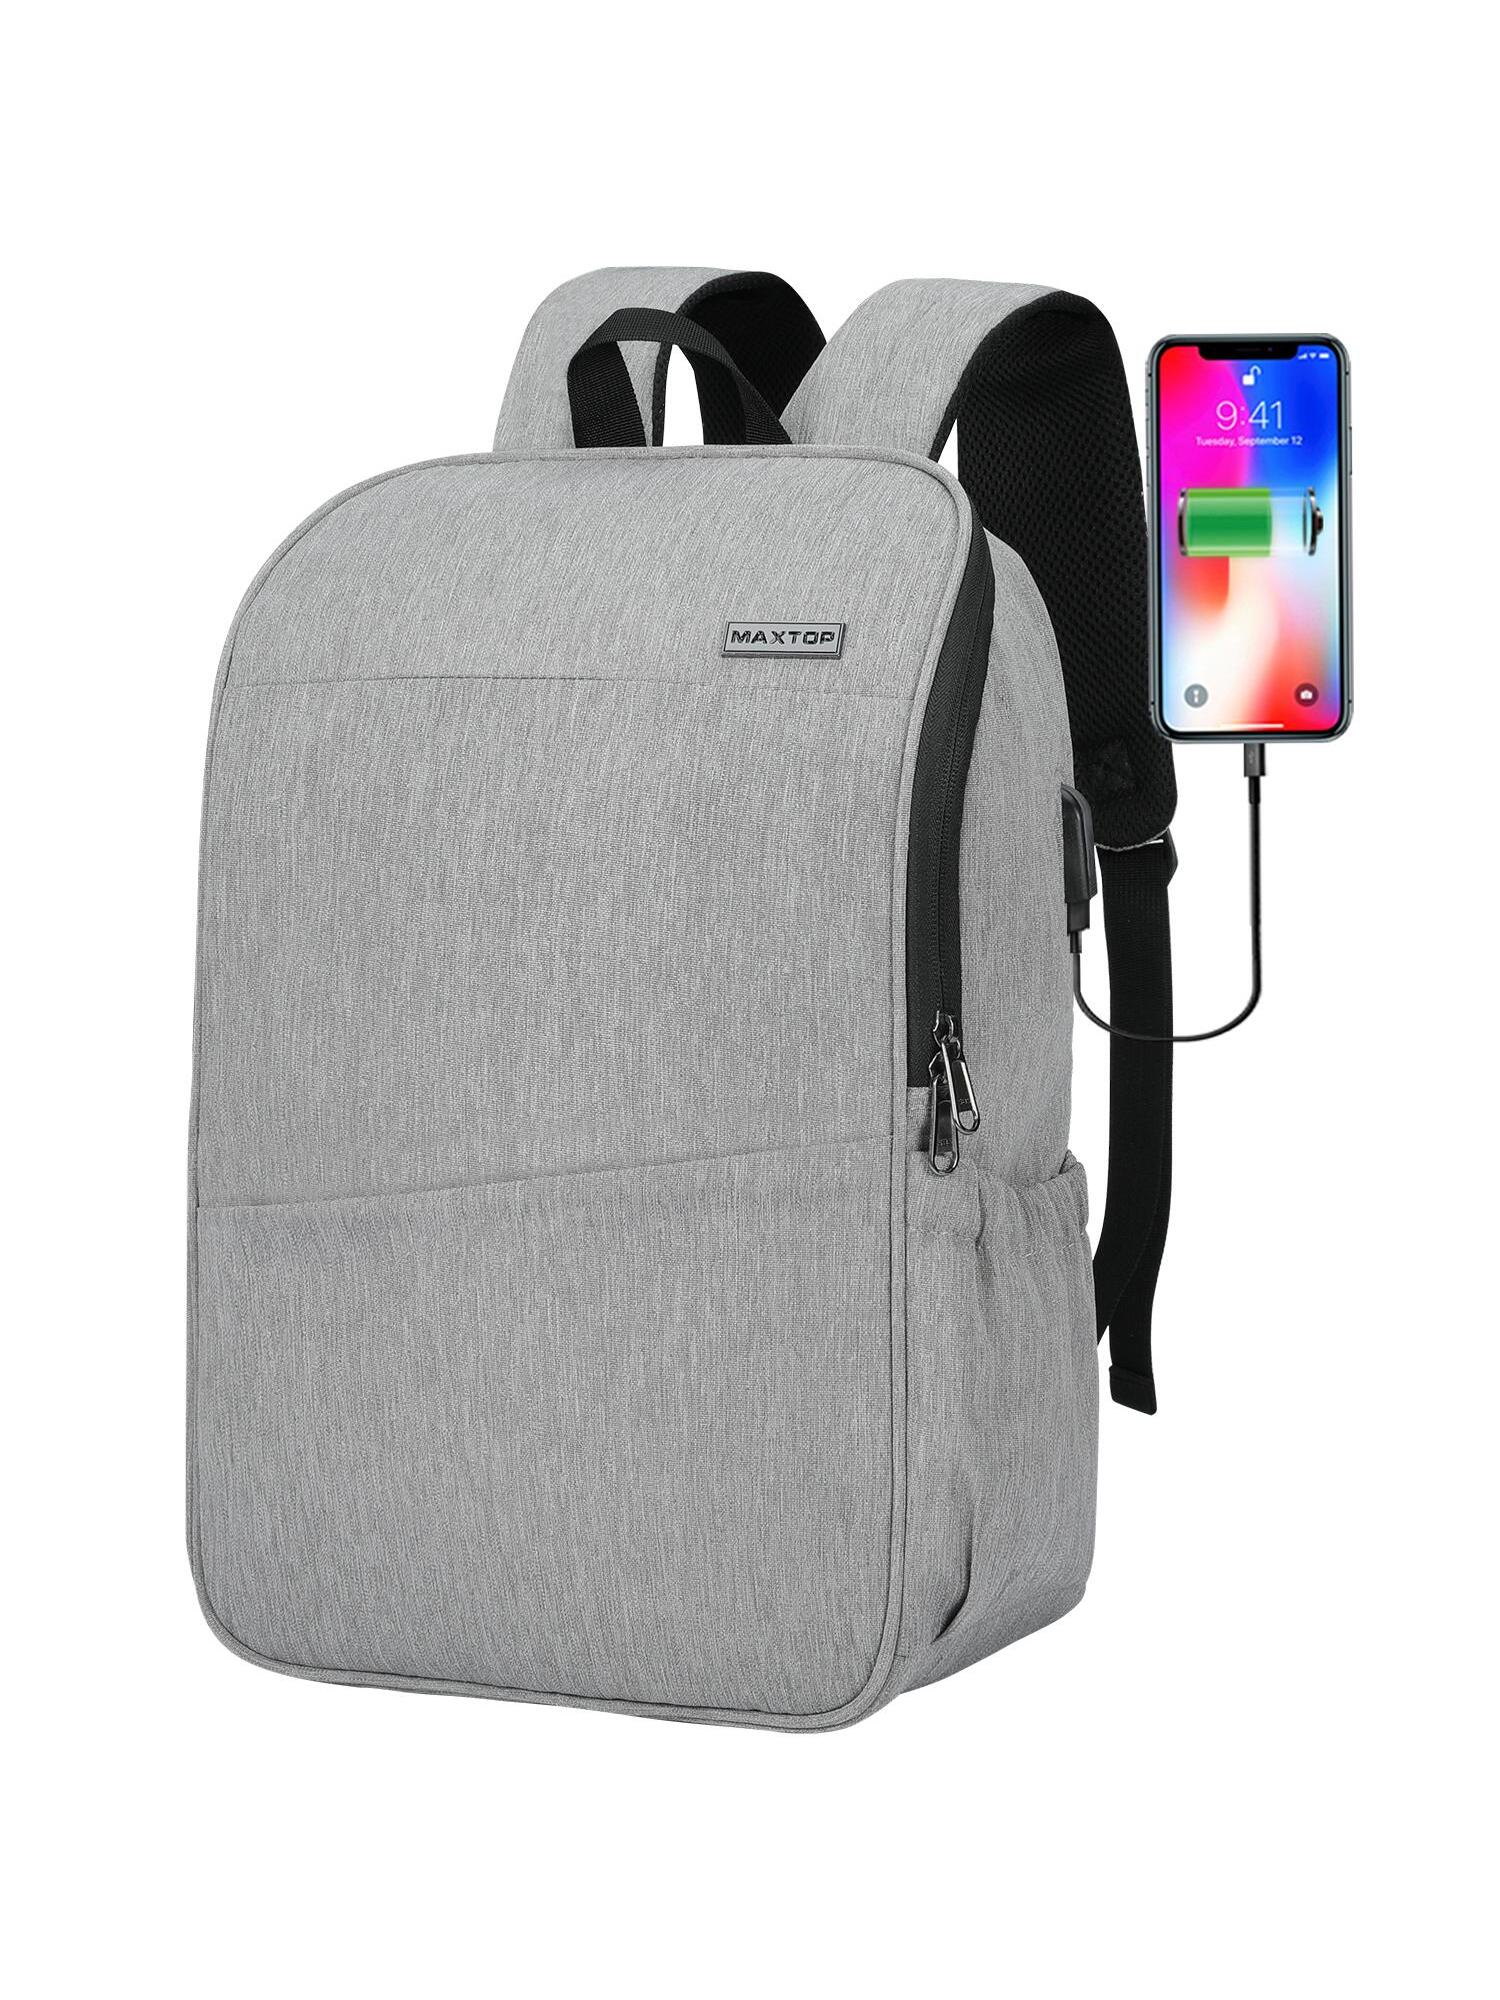 Рюкзак для ноутбука MAXTOP с глубоким хранилищем и USB-портом для зарядки Сумка для студенческого компьютера Подходит для 16-дюймового ноутбука, светло-серый рюкзак coolbell для ноутбука 17 3 дюйма водонепроницаемый профессиональный дорожный рюкзак с usb портом для зарядки унисекс нейлоновая школьная